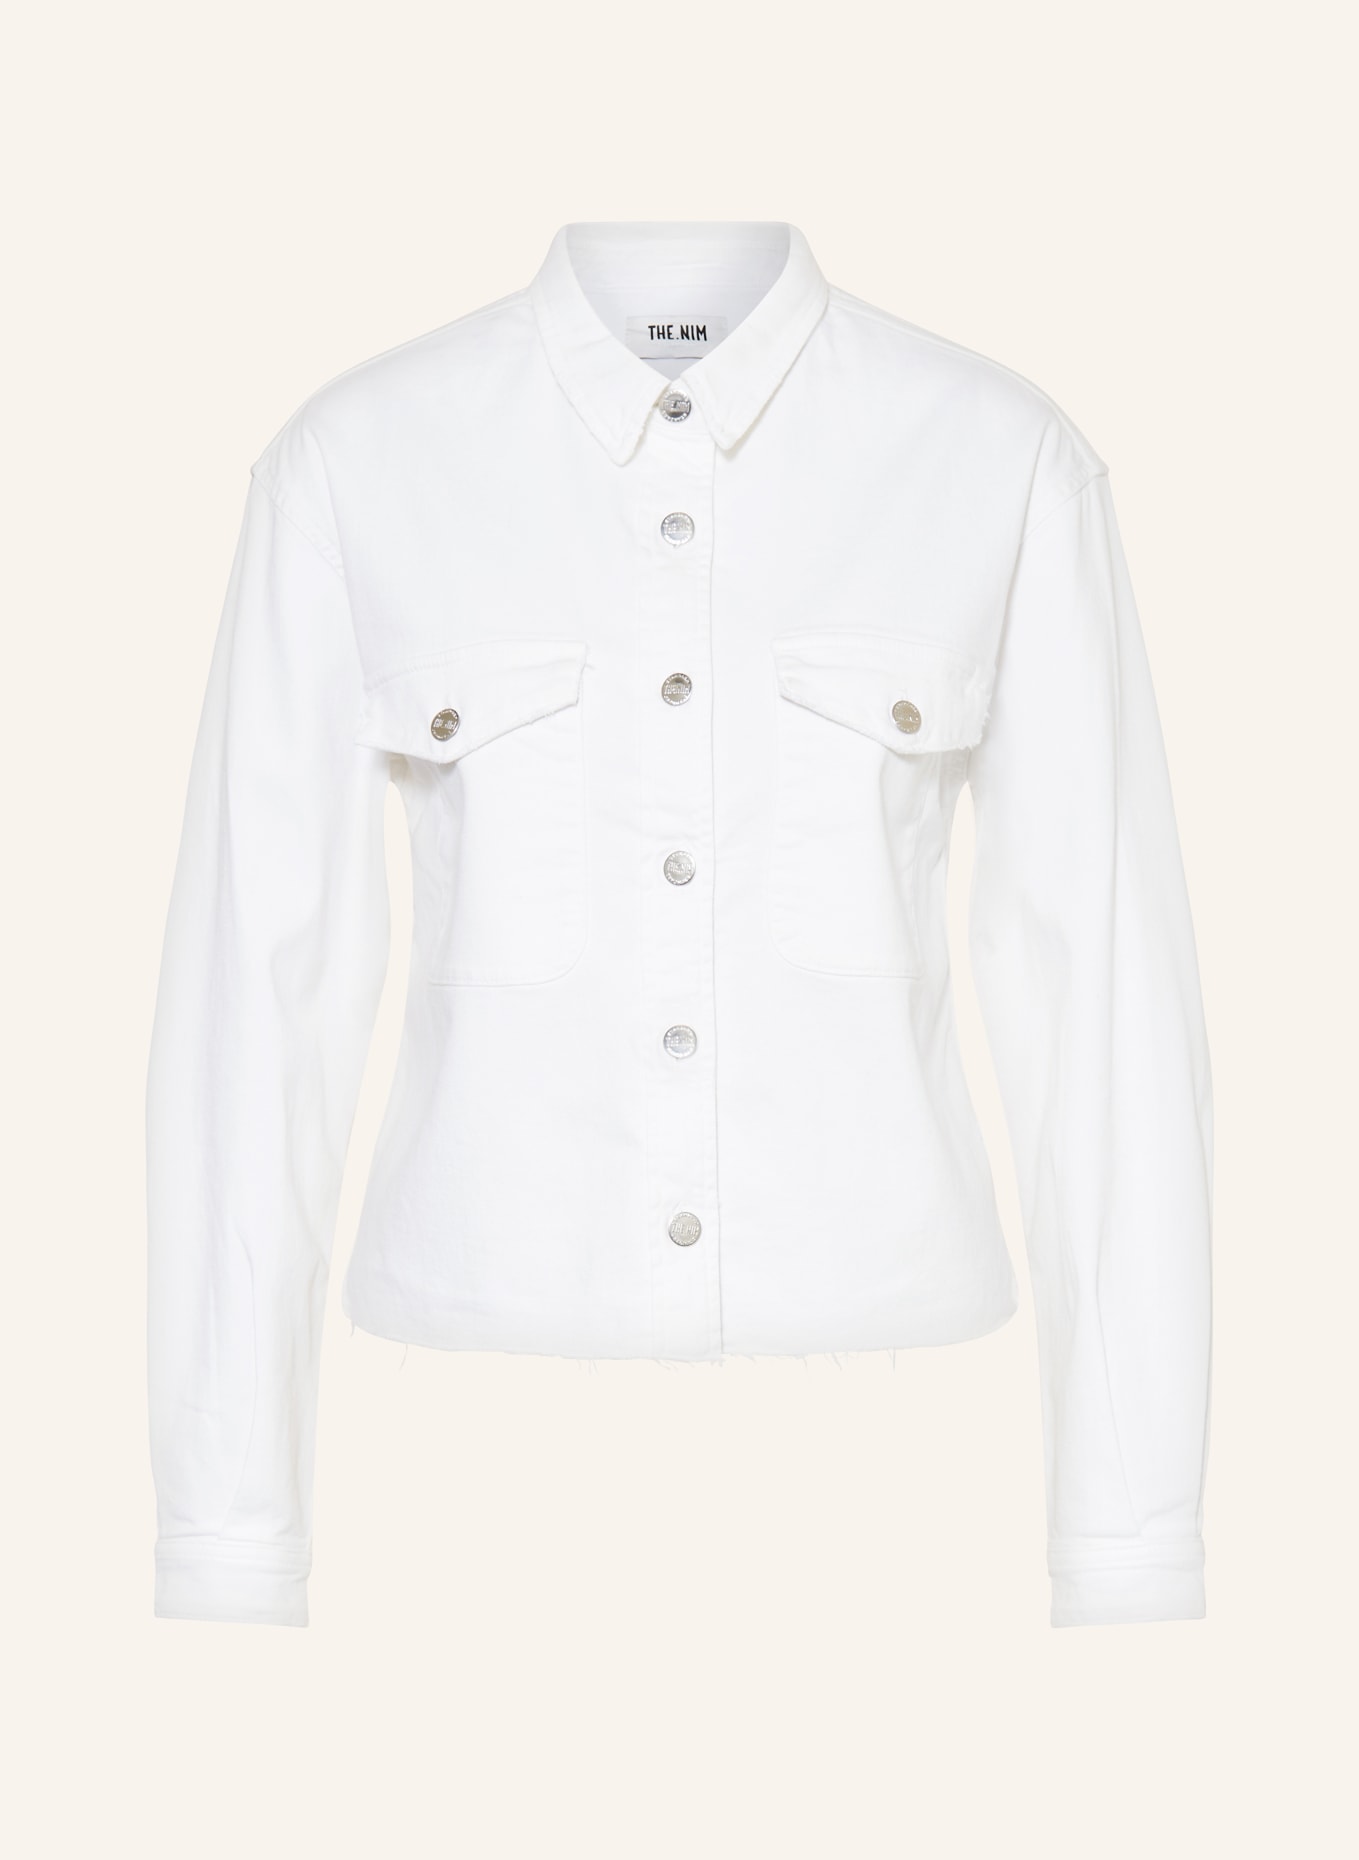 THE.NIM STANDARD Denim jacket, Color: WHITE (Image 1)